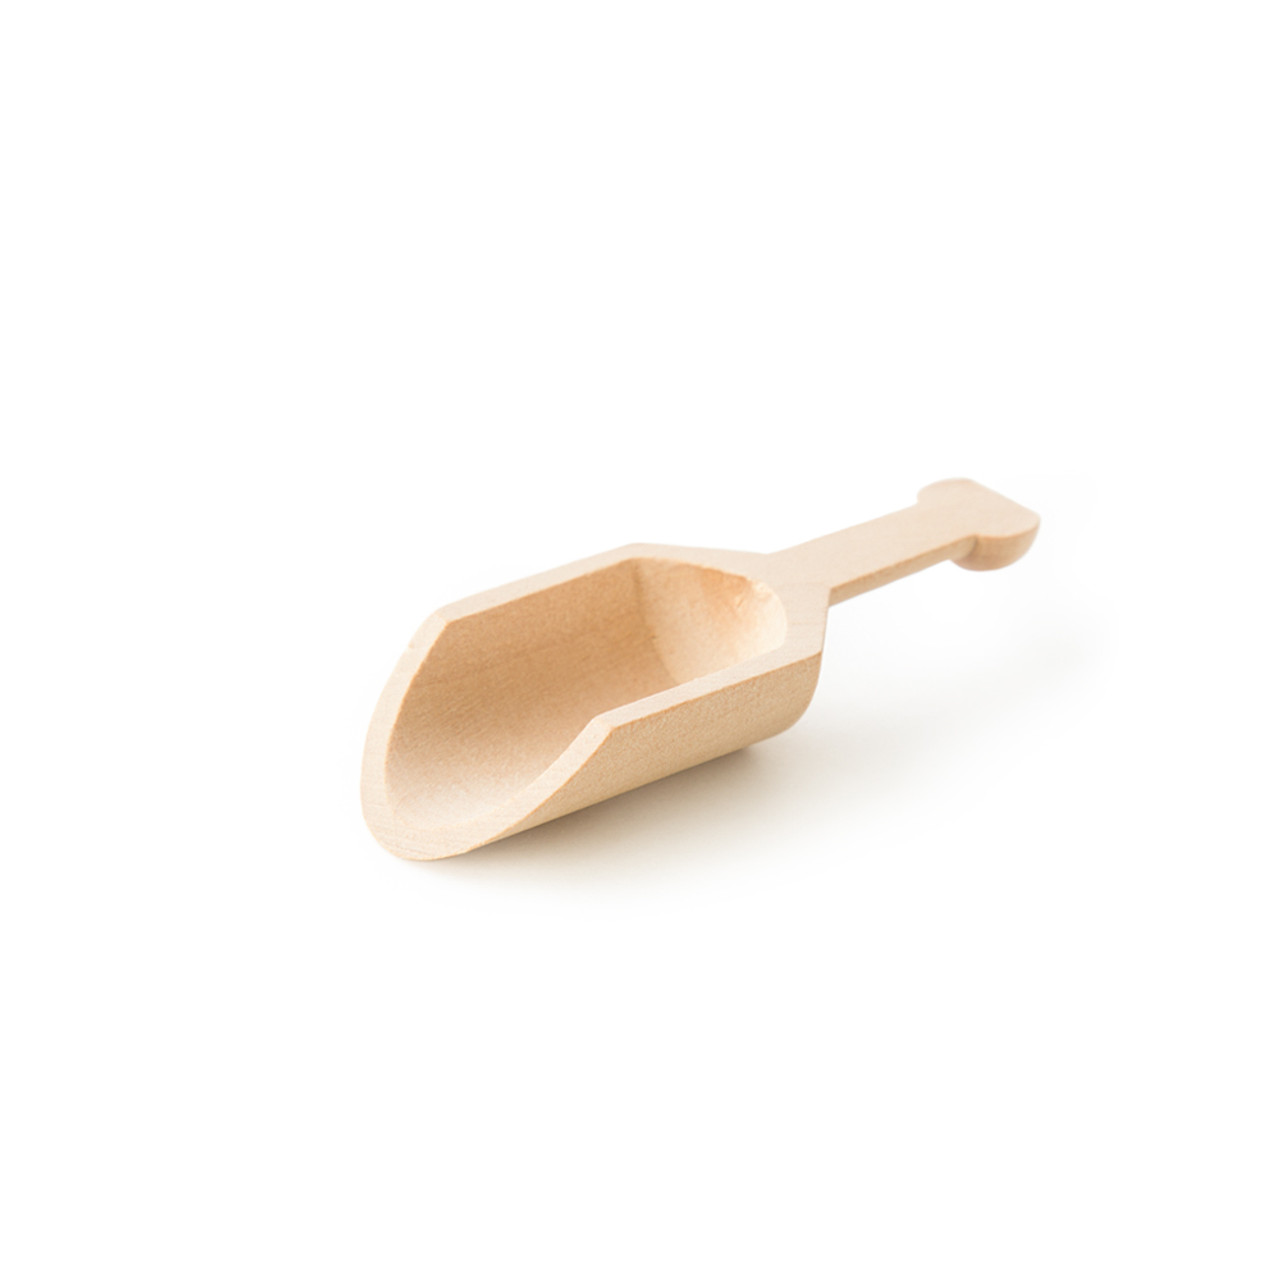 Small wood scoop, wood kitchen utensil, wooden scoop, ice cream